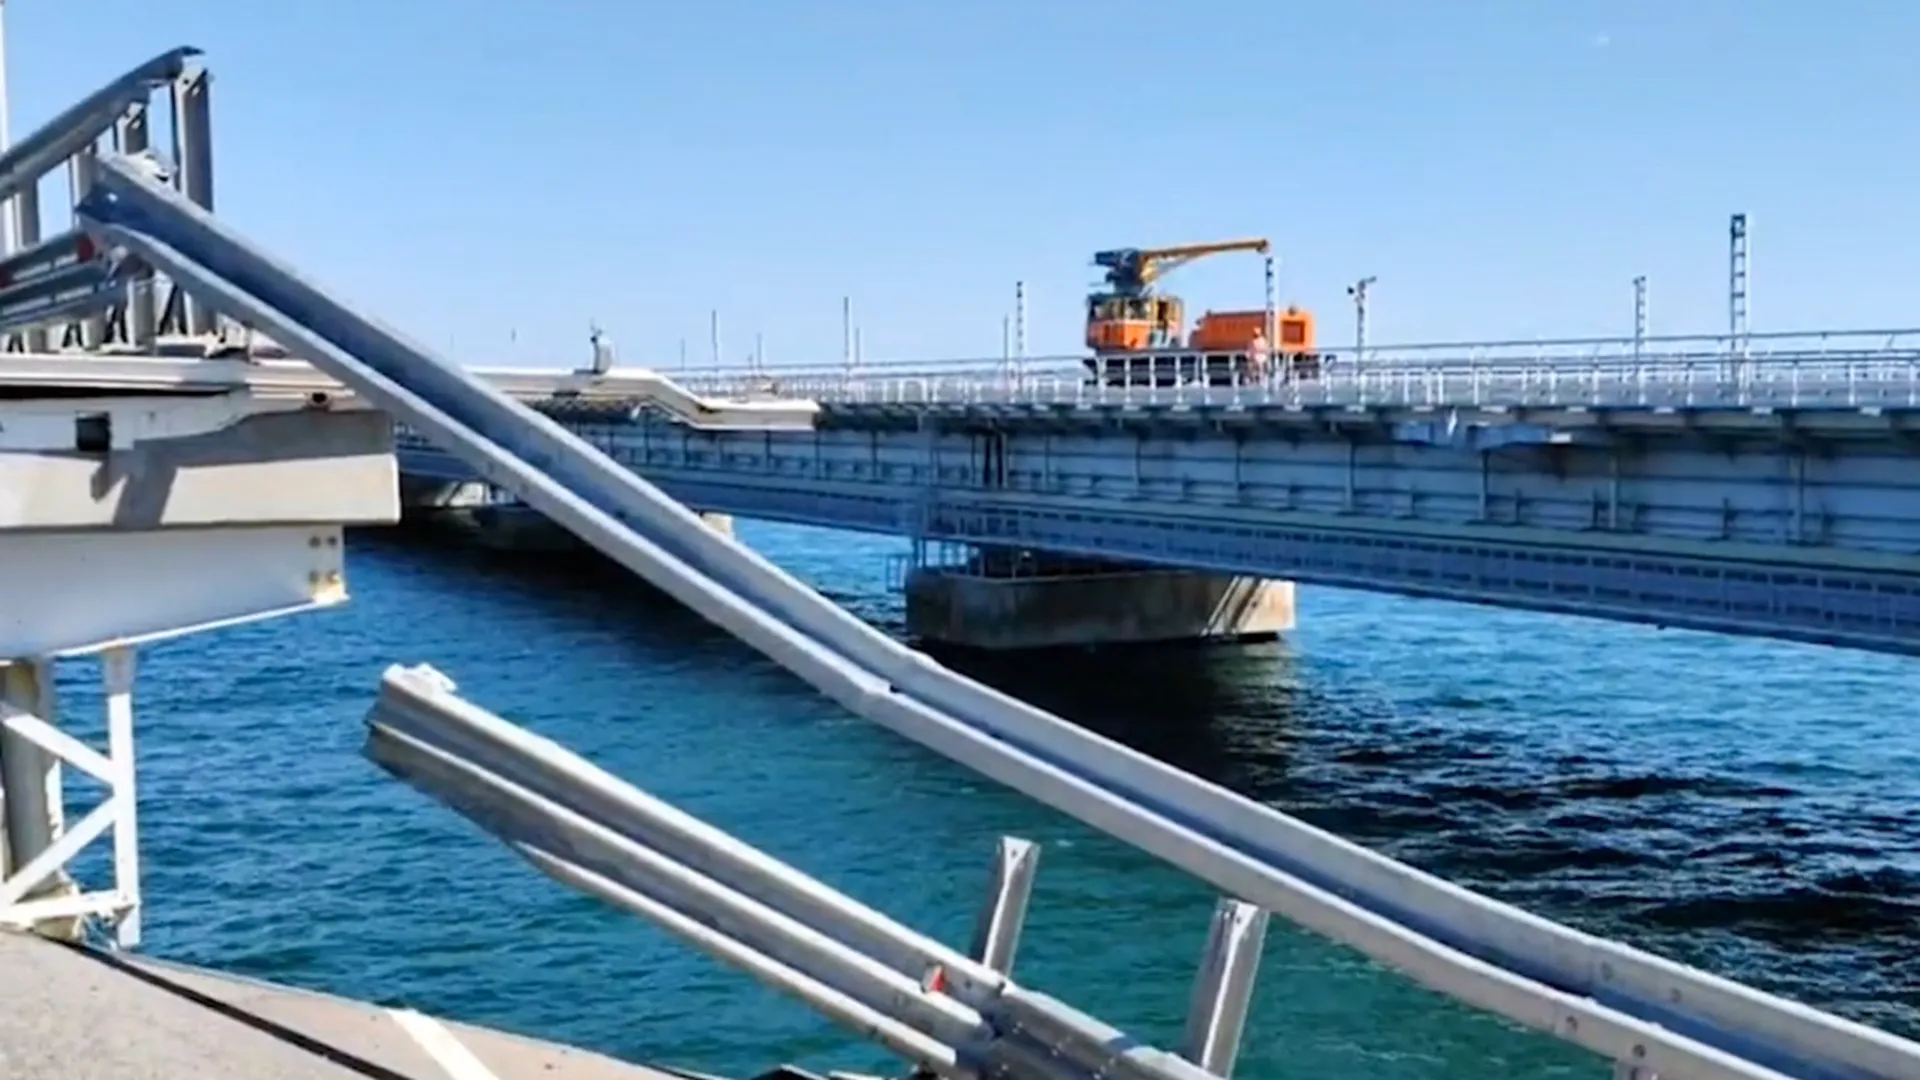 «Вблизи портов может быть небезопасно»: эксперт по туризму рассказал, стоит ли ехать в Крым